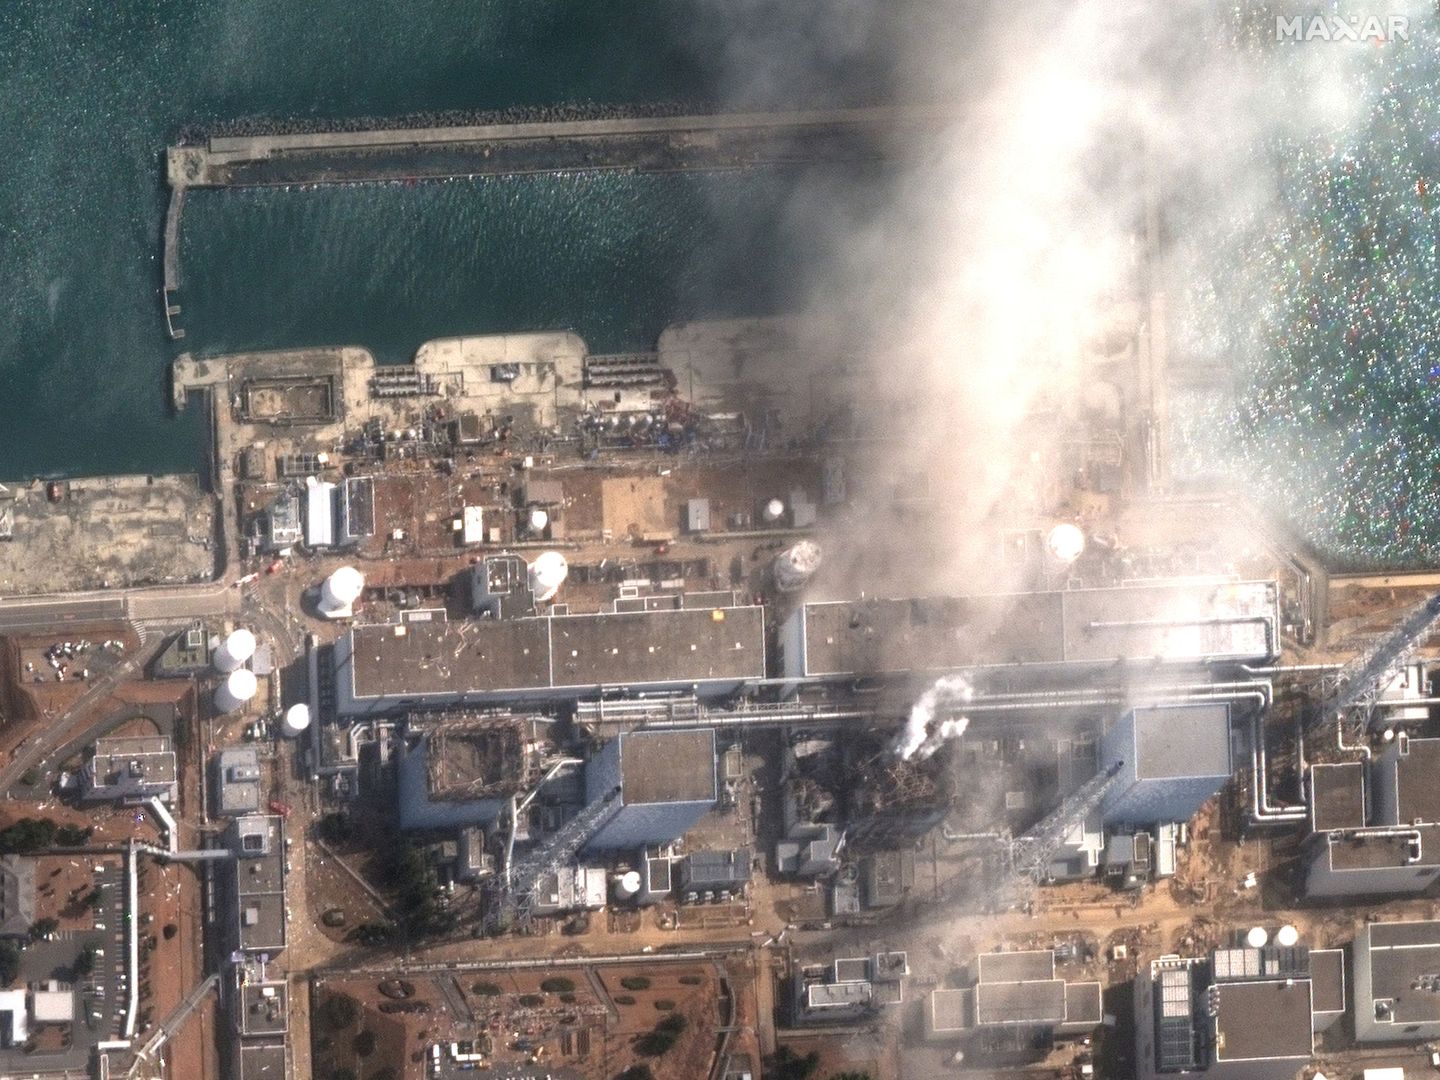 Foto de la planta de Fukushima vista desde el espacio tras su explosion en  2011. Foto: Maxar Technologies Handout via REUTERS.